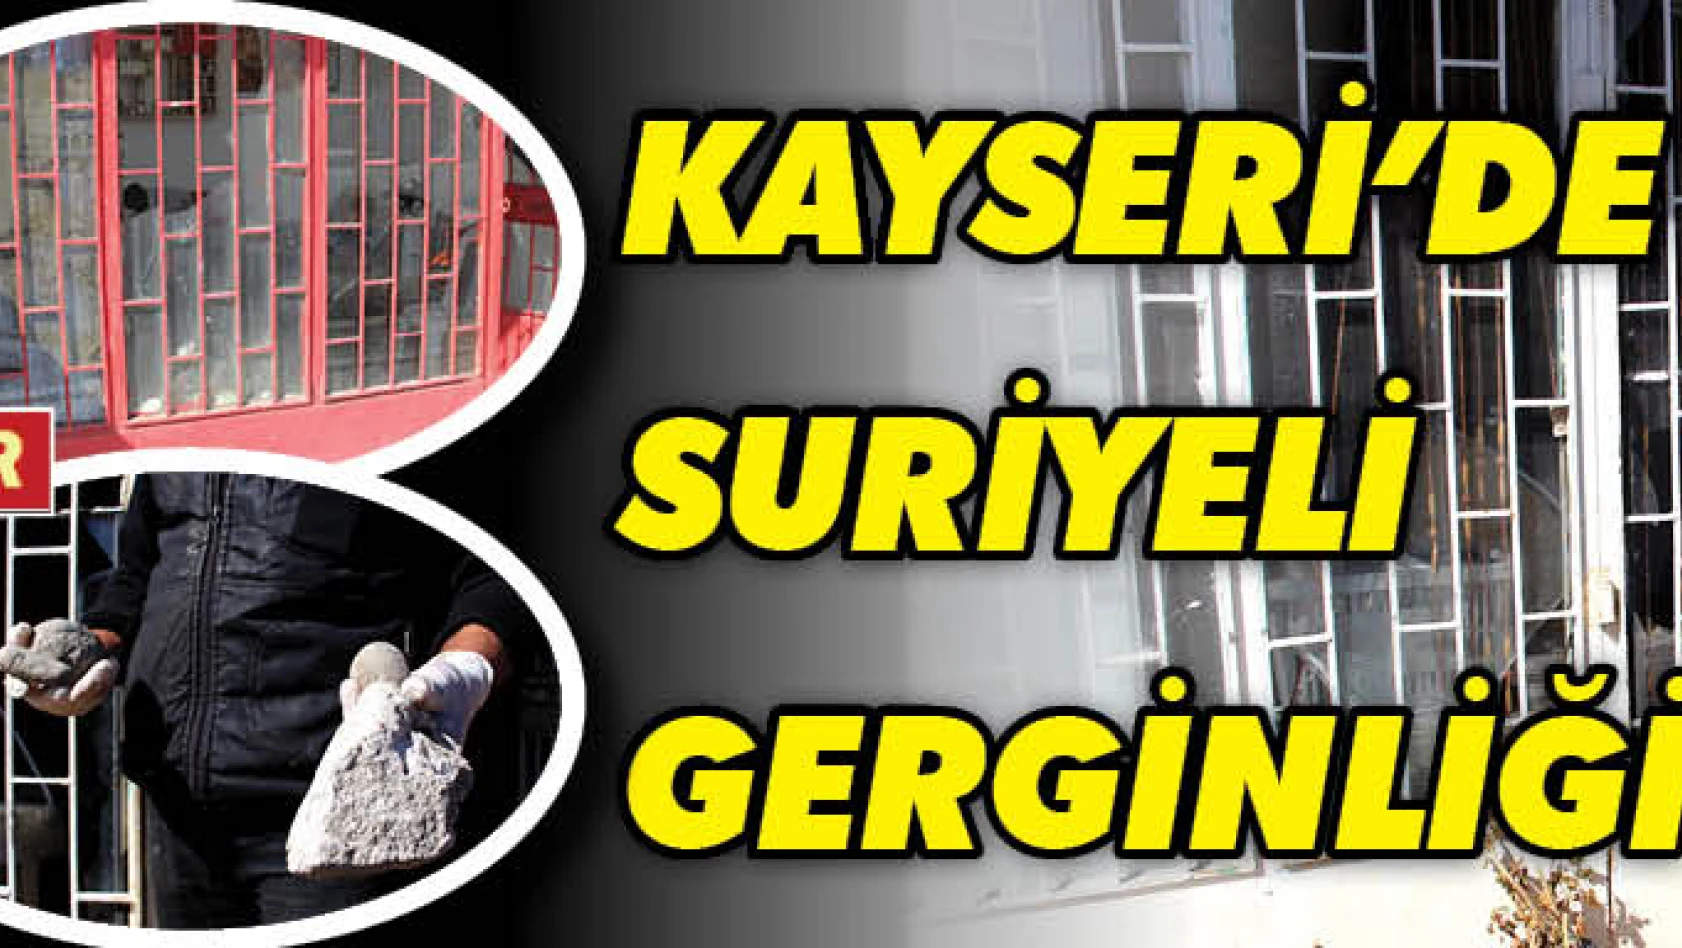 Kayseri'de Suriyeli gerginliği